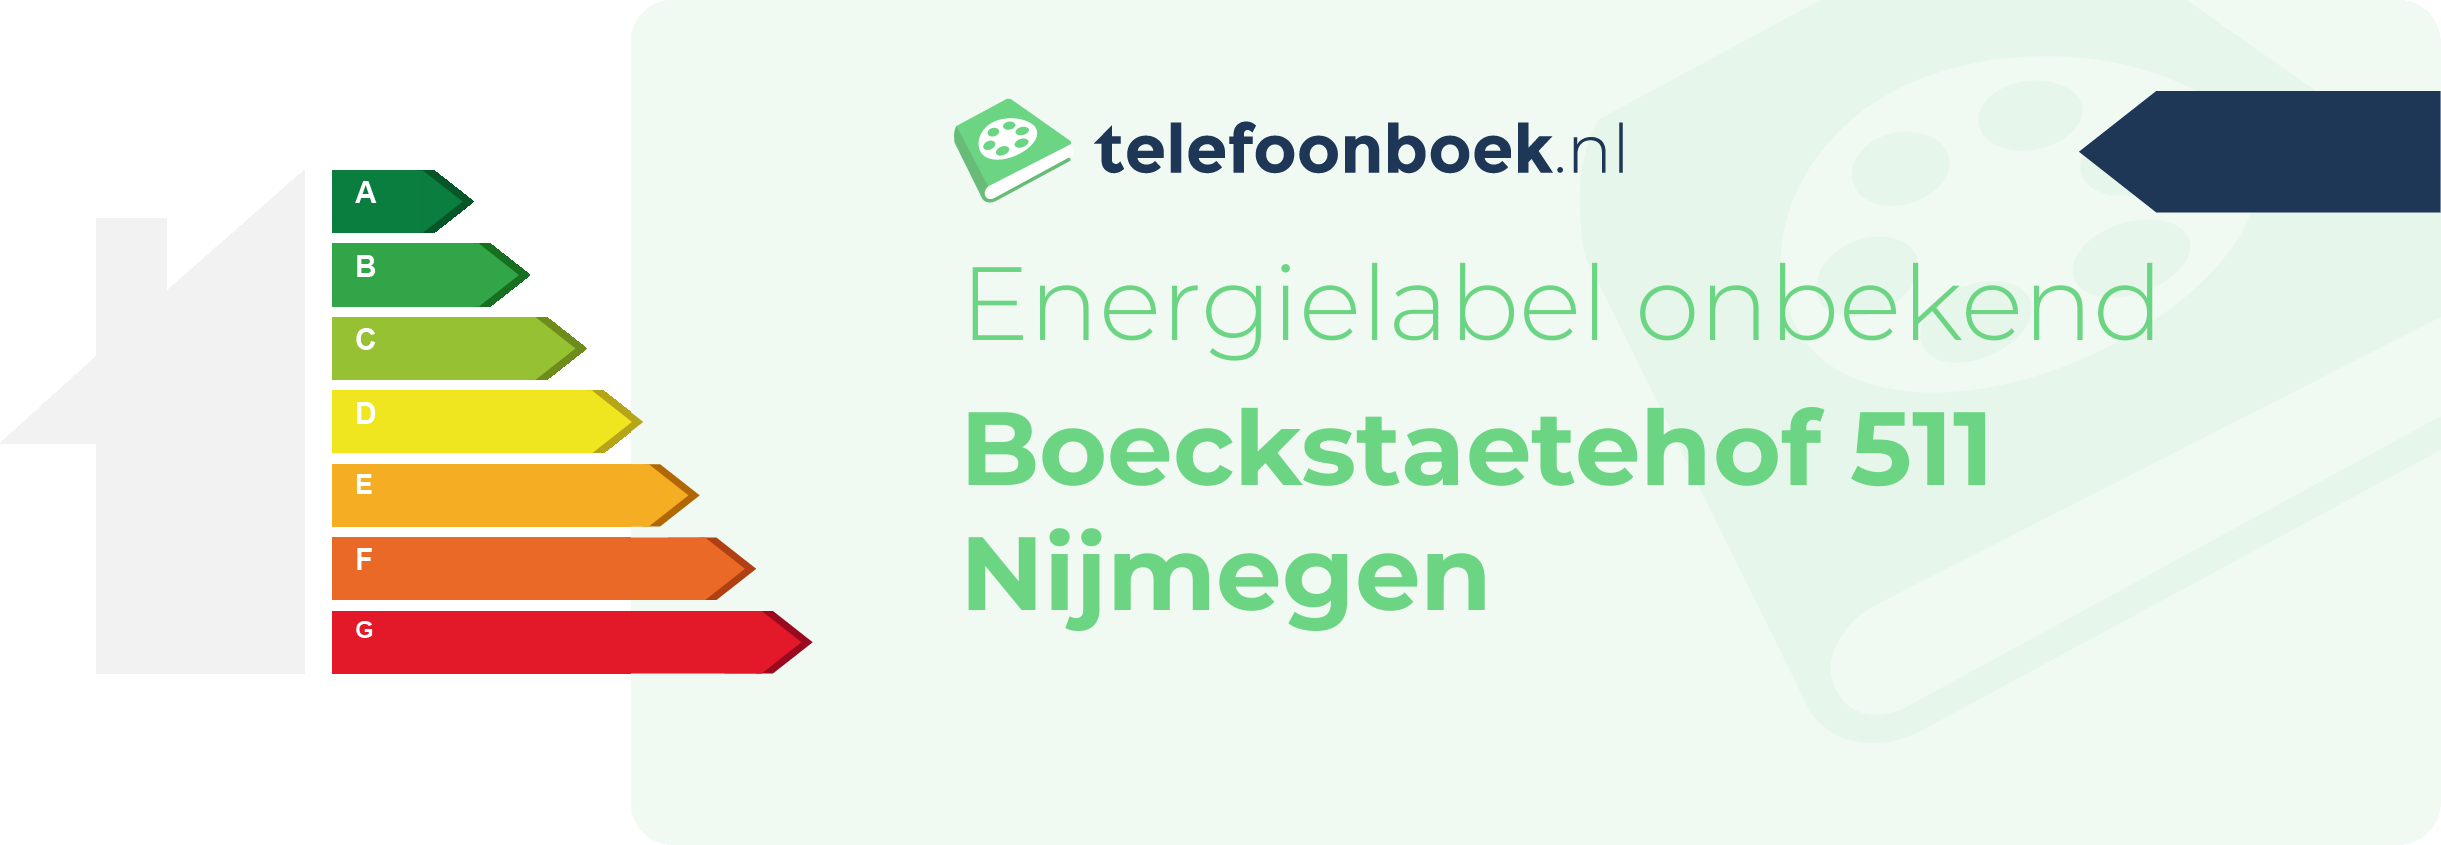 Energielabel Boeckstaetehof 511 Nijmegen